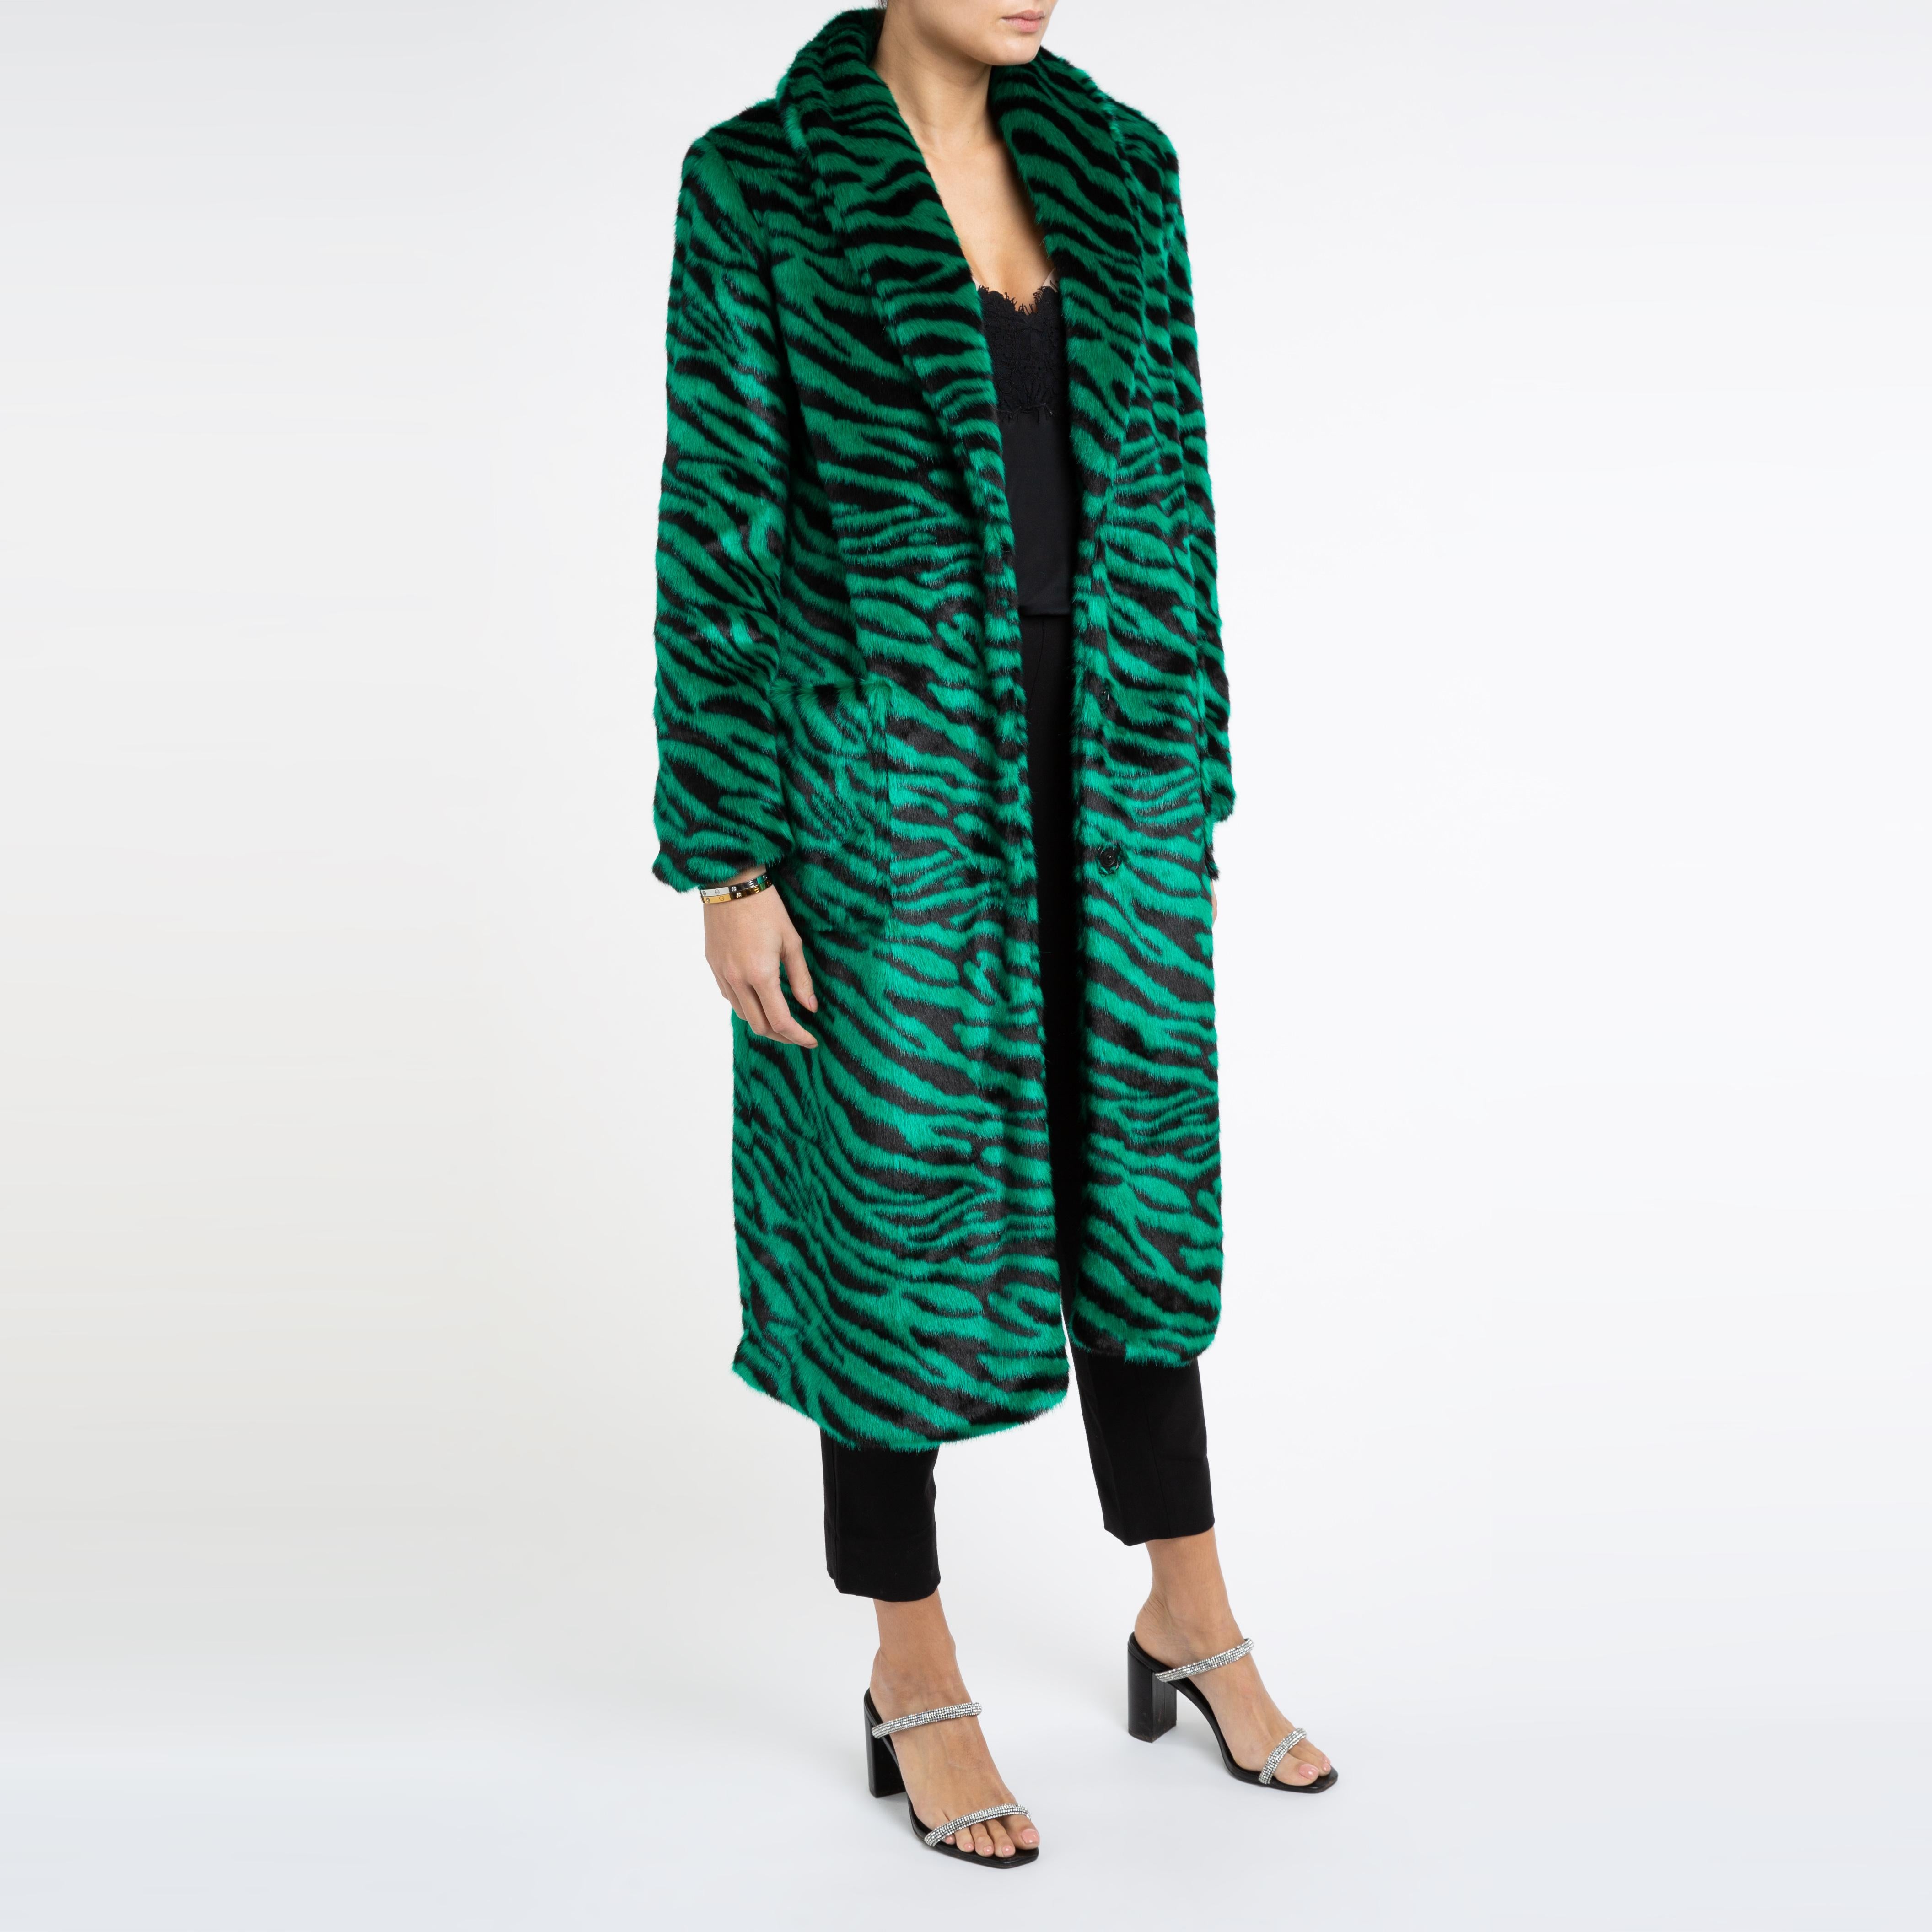 Esmeralda Kunstpelz-Mantel in Smaragdgrün mit Zebra-Druck, Größe uk 14, London Damen im Angebot